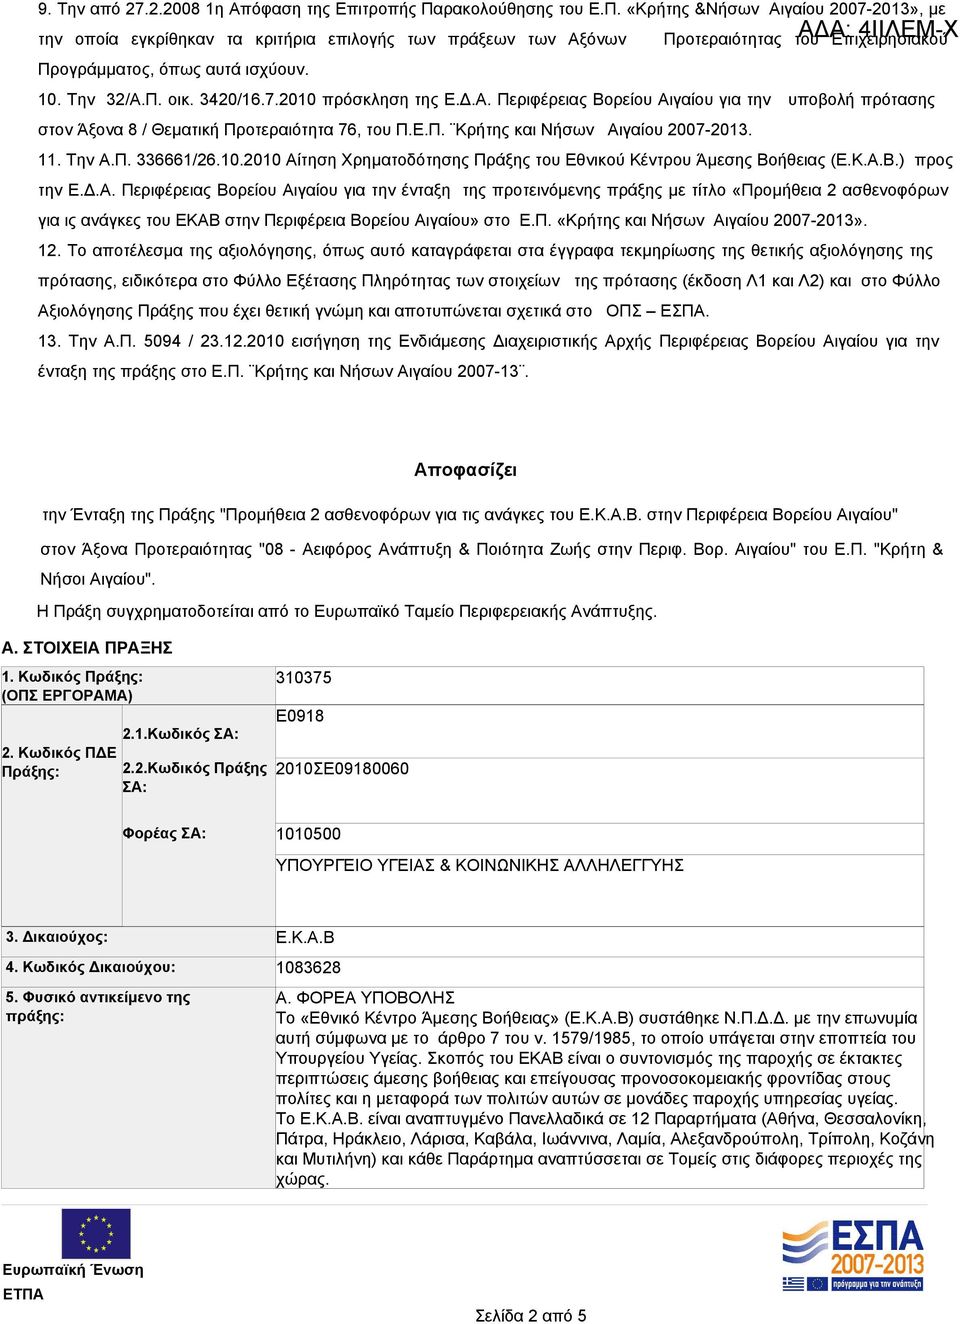 11. Την Α.Π. 336661/26.10.2010 Αίτηση Χρηματοδότησης Πράξης του Εθνικού Κέντρου Άμεσης Βοήθειας (Ε.Κ.Α.Β.) προς την Ε.Δ.Α. Περιφέρειας Βορείου Αιγαίου για την ένταξη της προτεινόμενης πράξης με τίτλο «Προμήθεια 2 ασθενοφόρων για ις ανάγκες του ΕΚΑΒ στην Περιφέρεια Βορείου Αιγαίου» στο Ε.